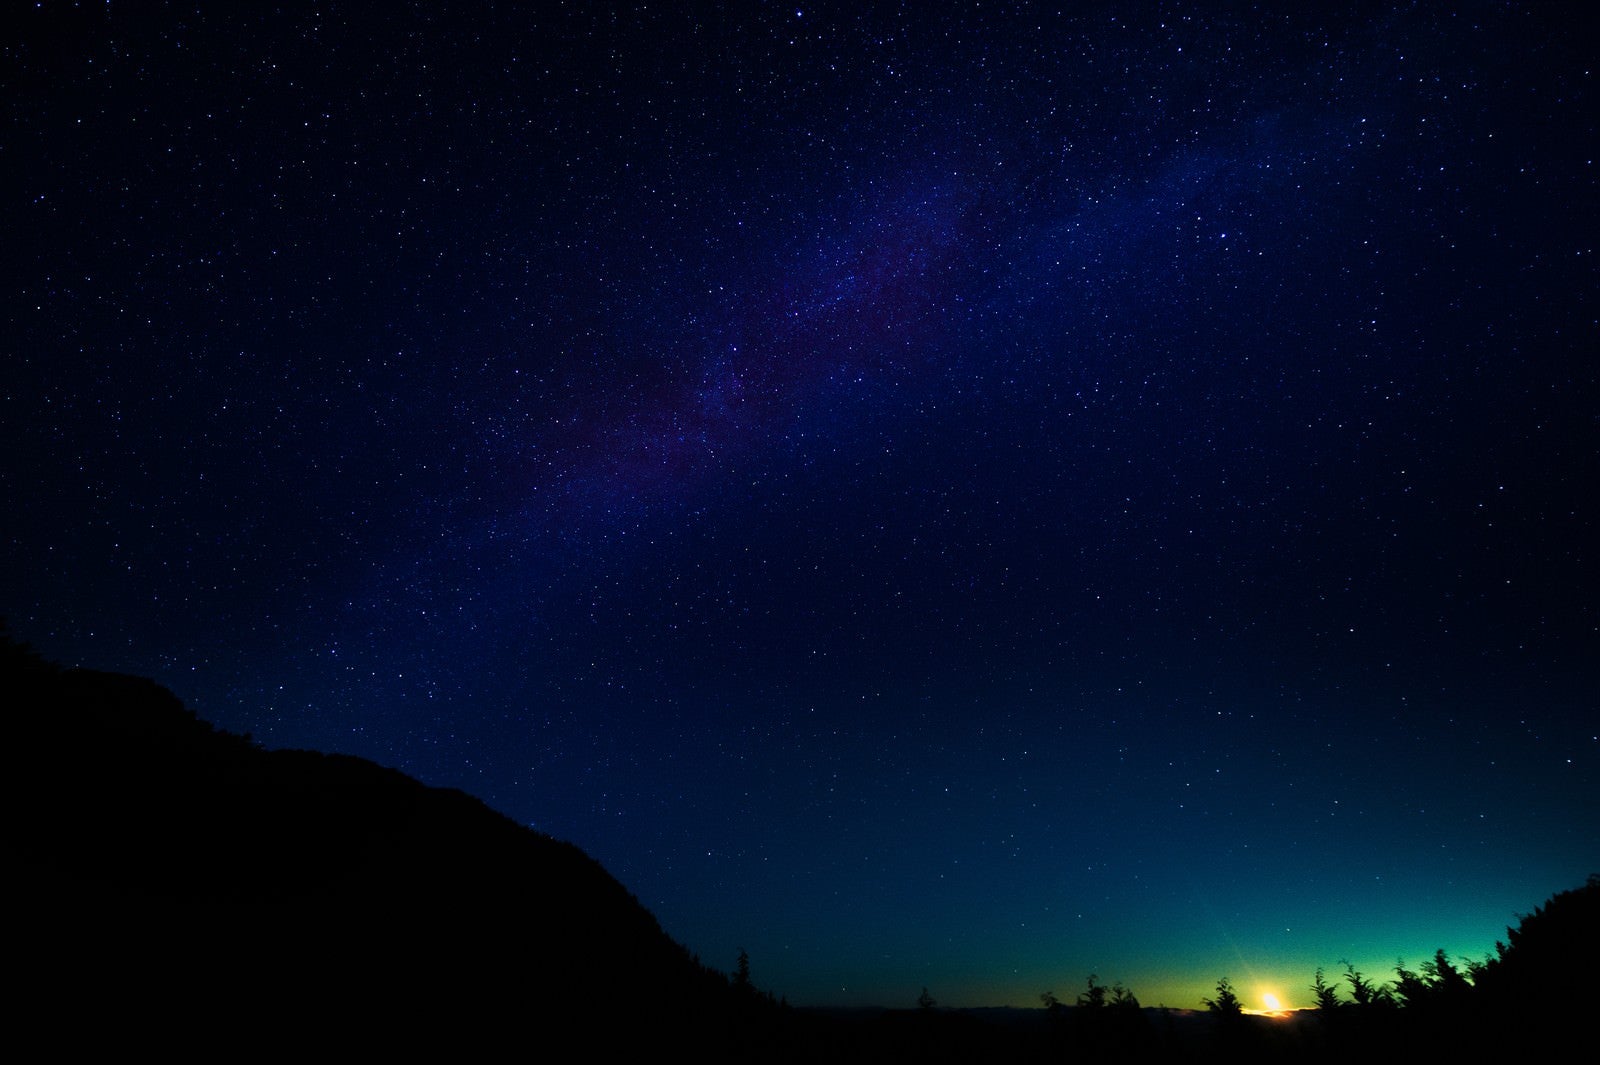 「鏡野町の星空と月明かり」の写真